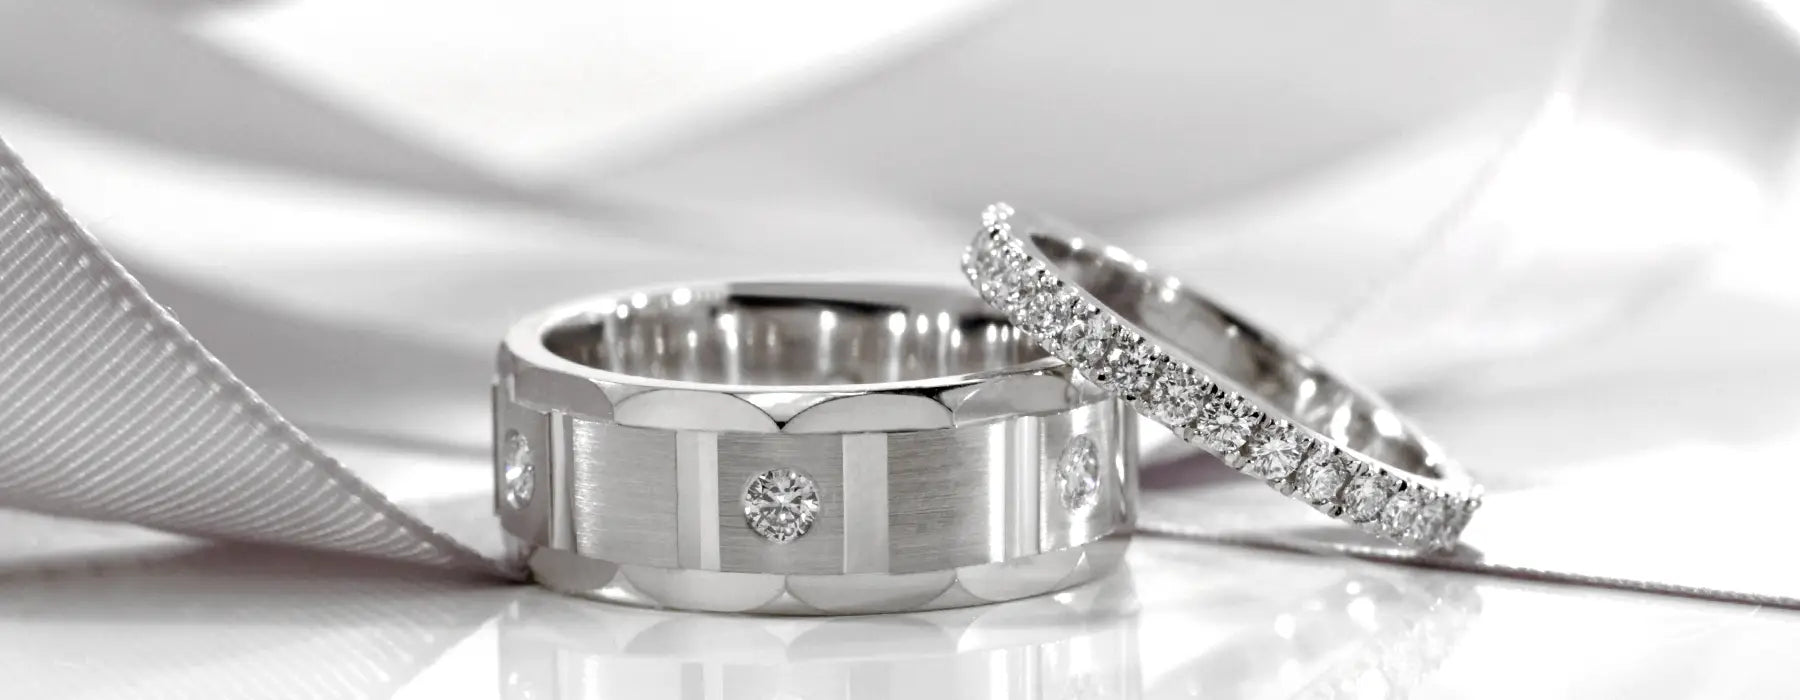 designer mens gold and platinum diamond wedding rings at Quorri